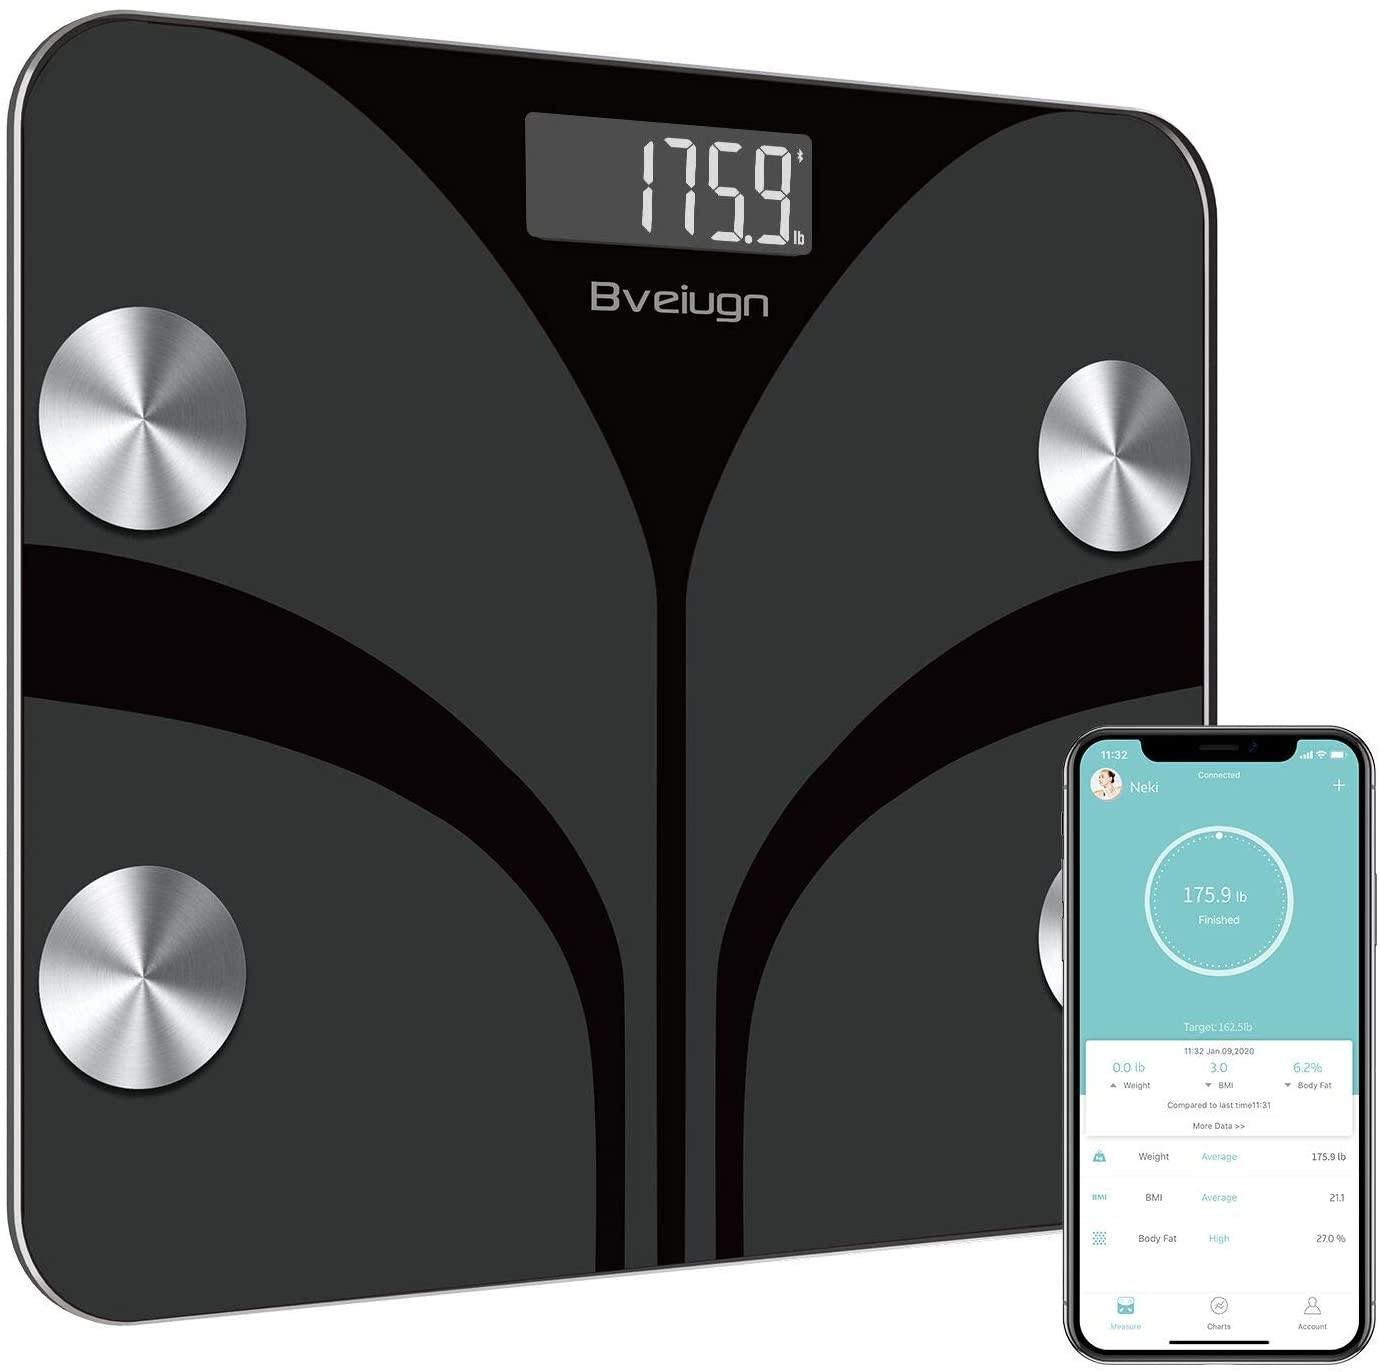 Body Fat Smart Wireless Digital Scale for $20.99